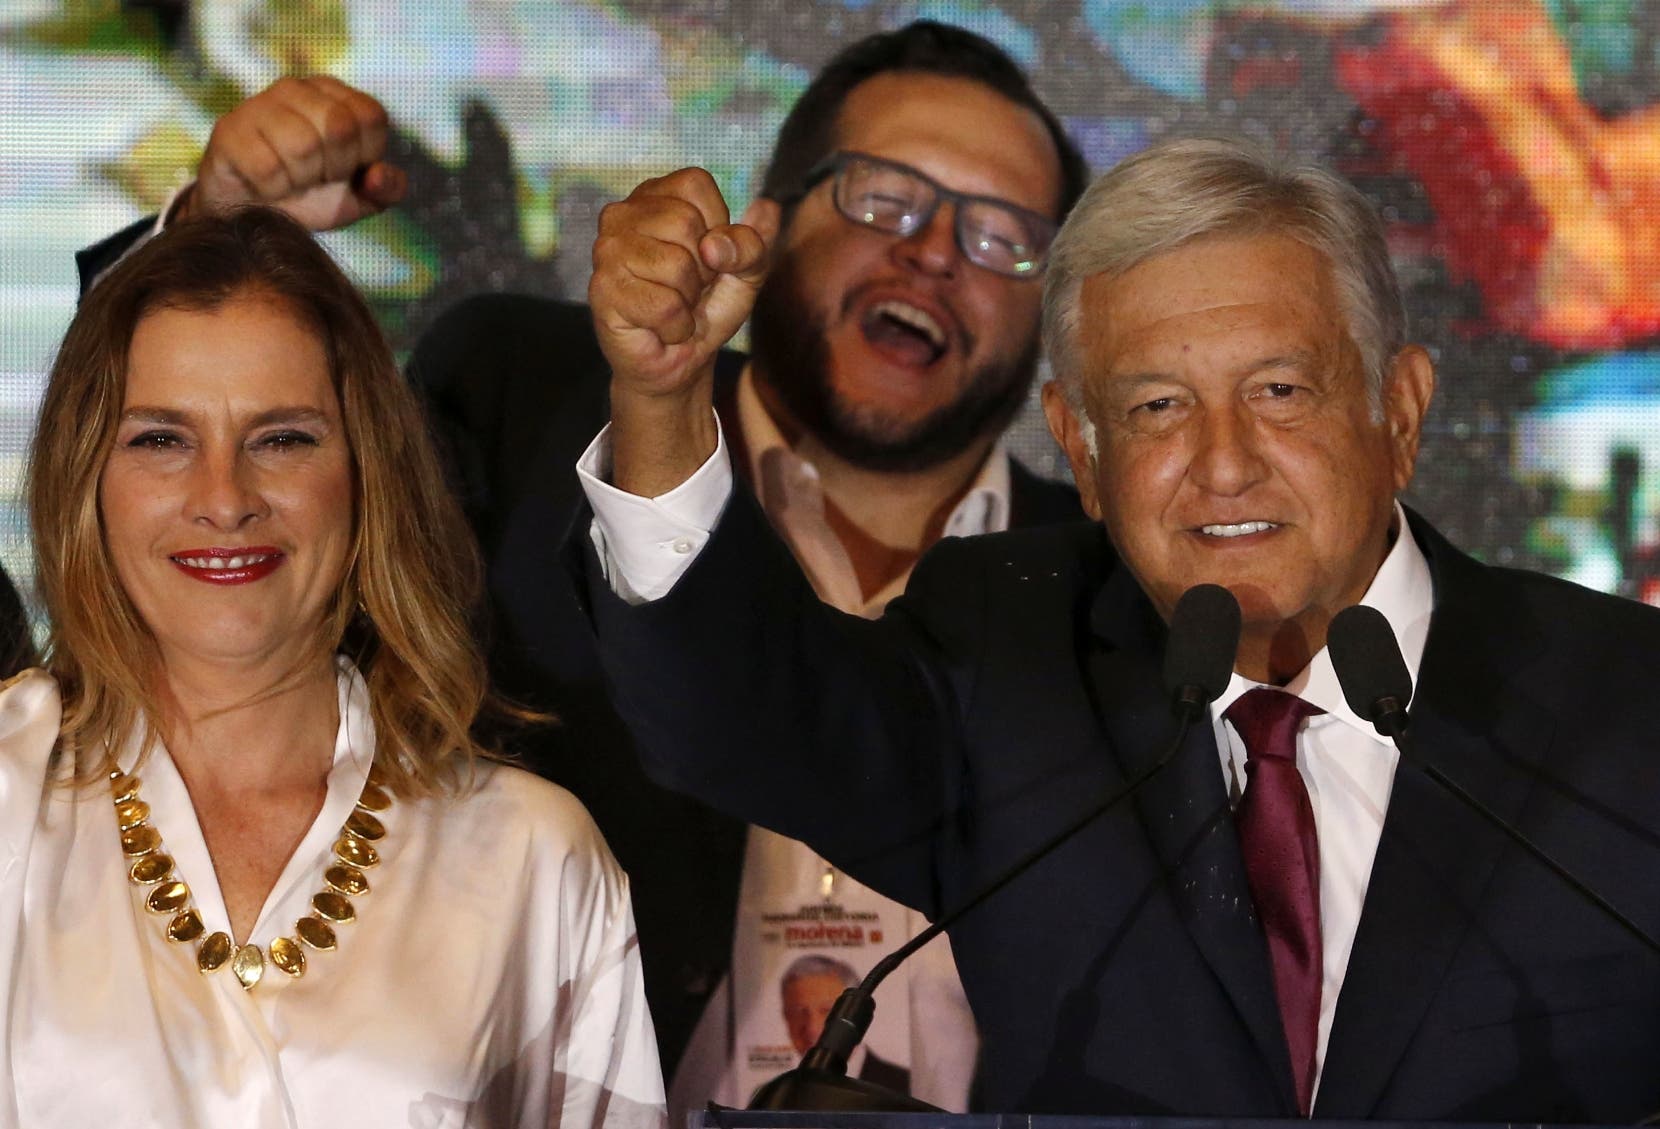 El presidente electo AndrÃ©s LÃ³pez Obrador prometiÃ³ combatir la pobreza que afecta a cerca de 50 millones de personas.